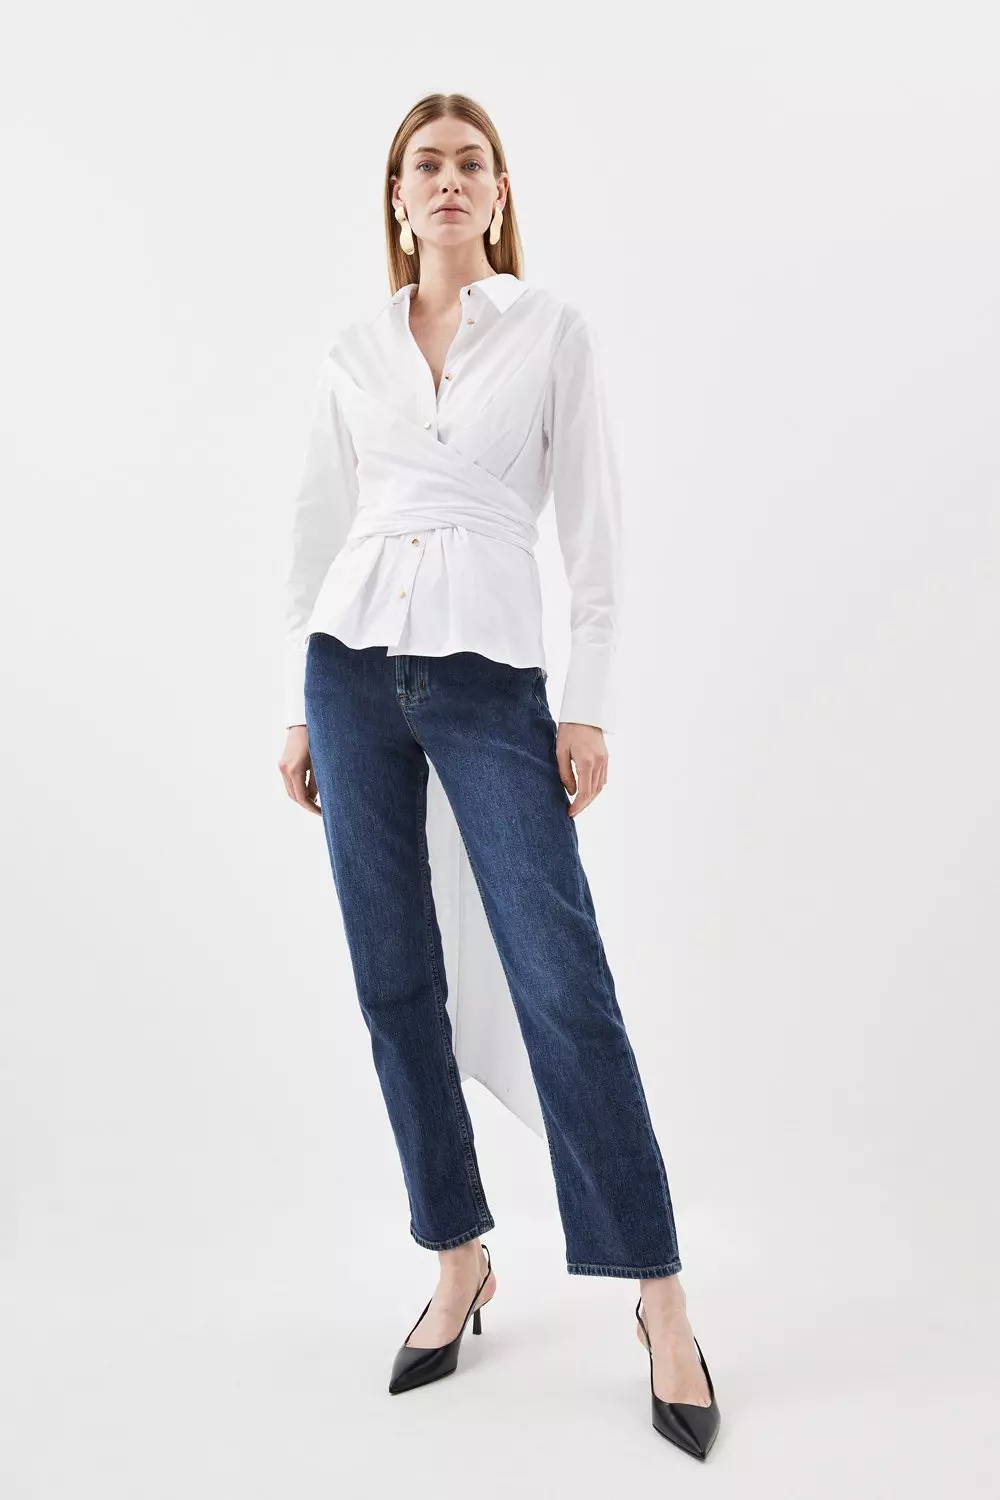 Cotton Poplin Self-Tie Shirt - Women - Ready-to-Wear